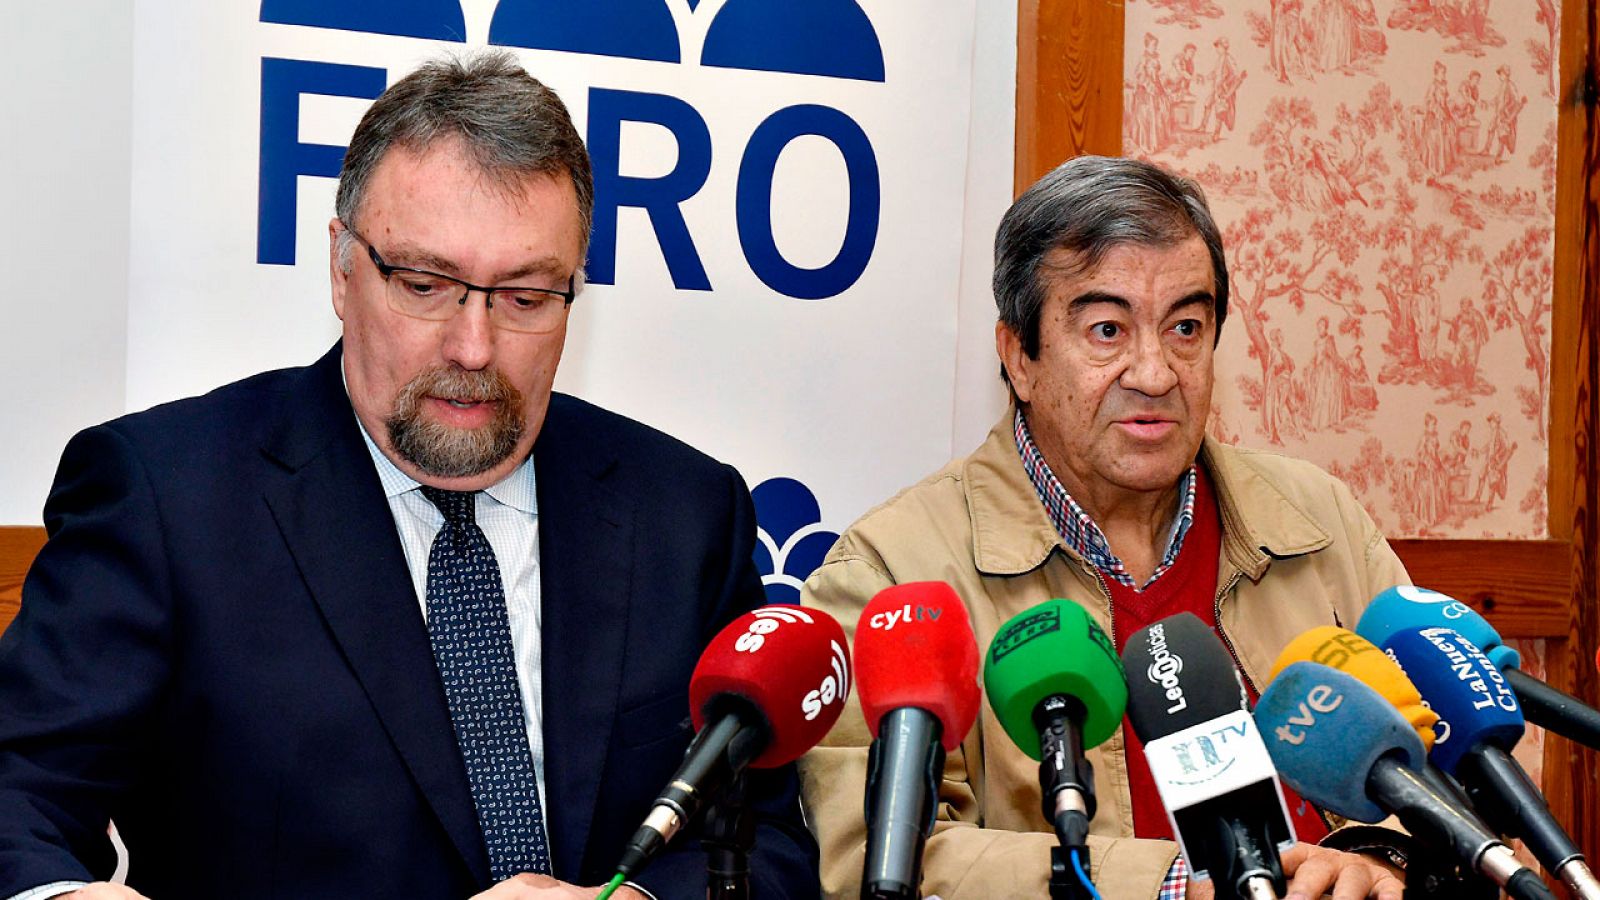 El diputado de Foro Asturias Isidro Martínez Oblanca, junto al secretario general de la formación regionalista, Francisco Álvarez-Cascos